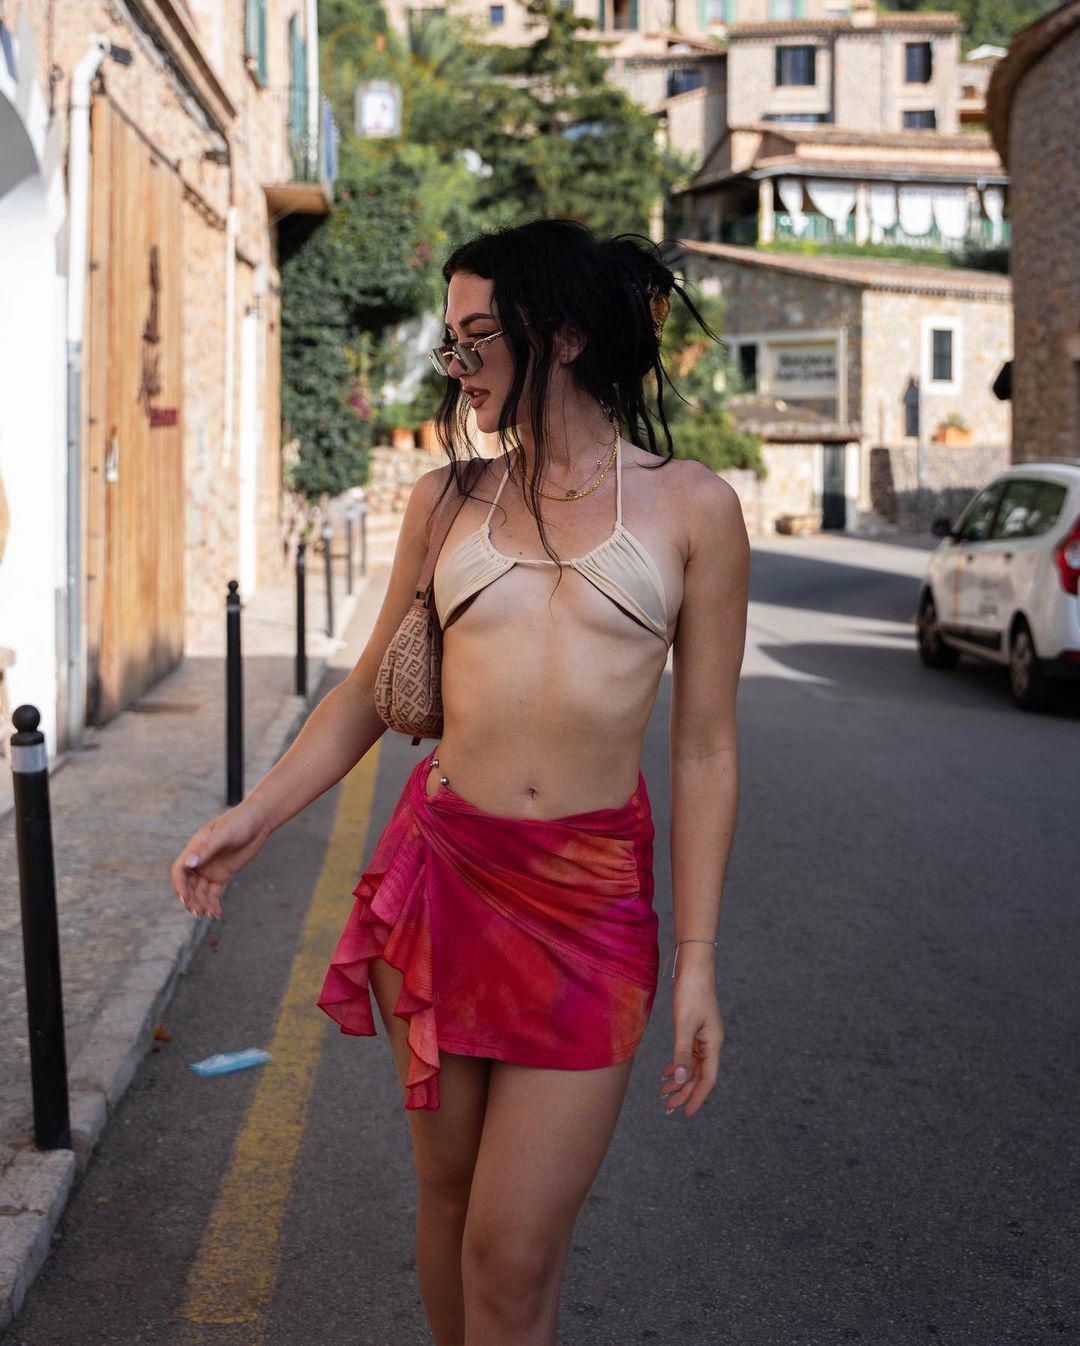 &nbsp;Evgeniya Lvovna&nbsp;diện trang phục gợi cảm, dạo bước trên một con đường thuộc thị trấn&nbsp;Deià,&nbsp;tại&nbsp;đảo&nbsp;Mallorca, thuộc quần đảo Baleares, Tây Ban Nha.